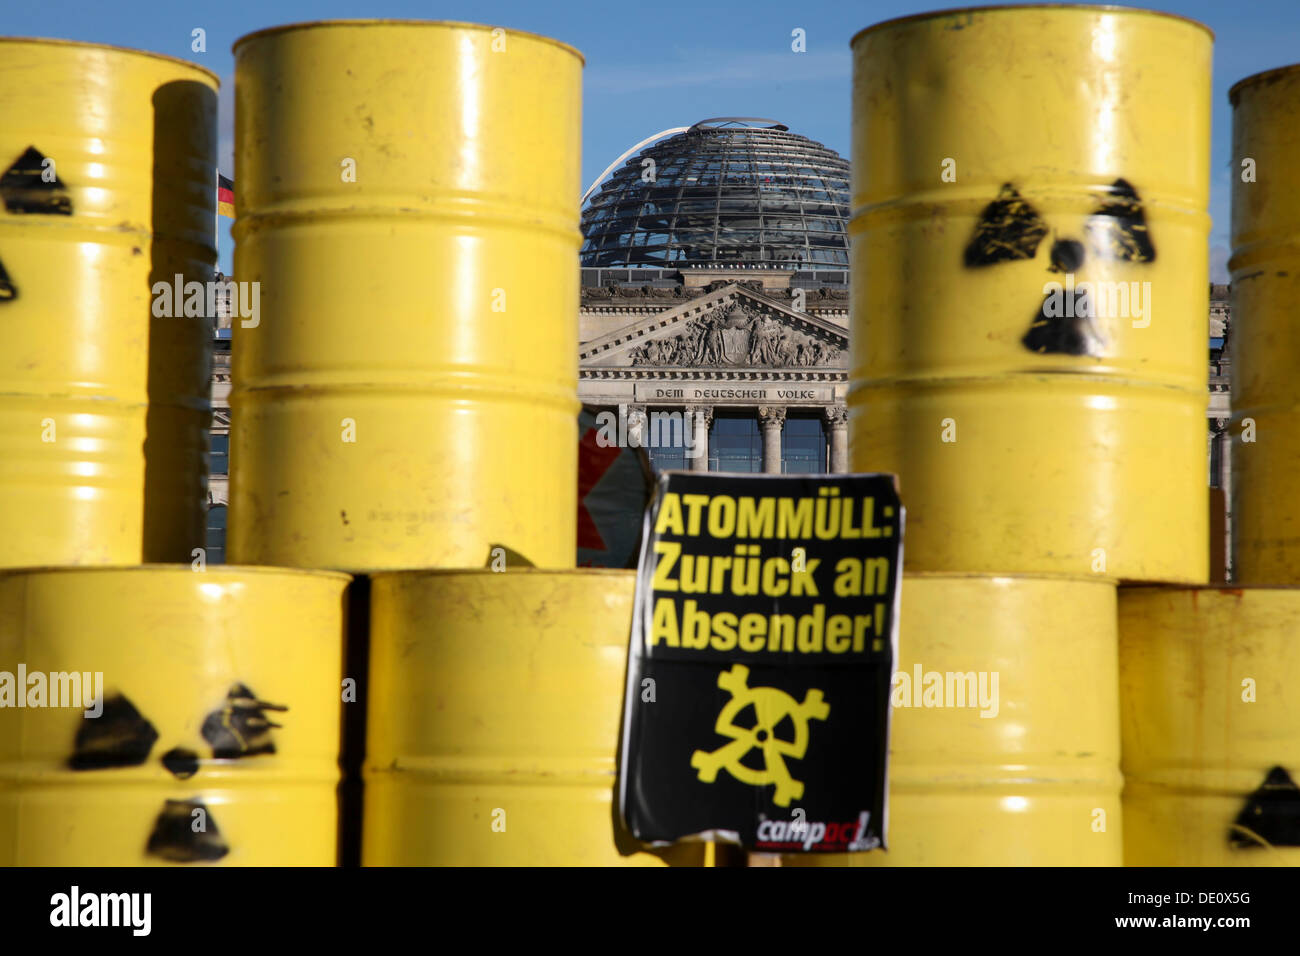 Segno, lettering "Atommuell zurueck an den Absender', tedesco per "rifiuti atomica - ritorno al mittente", una pila di rifiuti nucleari Foto Stock